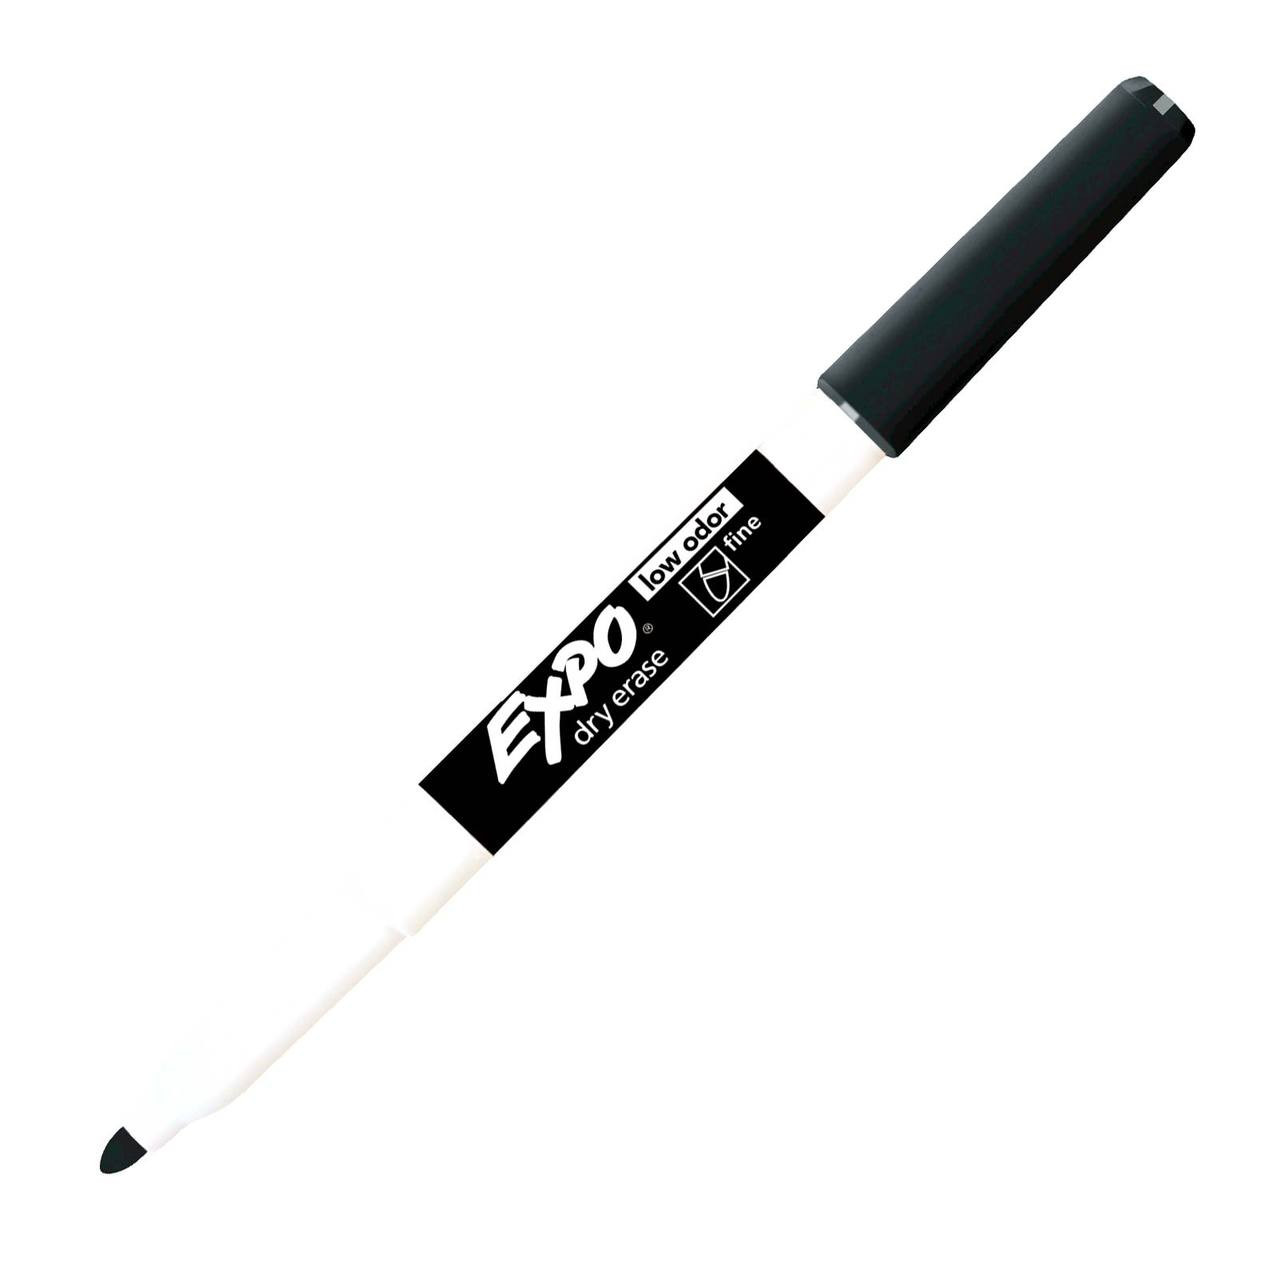 Expo Dry Erase Marker, Bullet Point, Black (bulk pack of 144